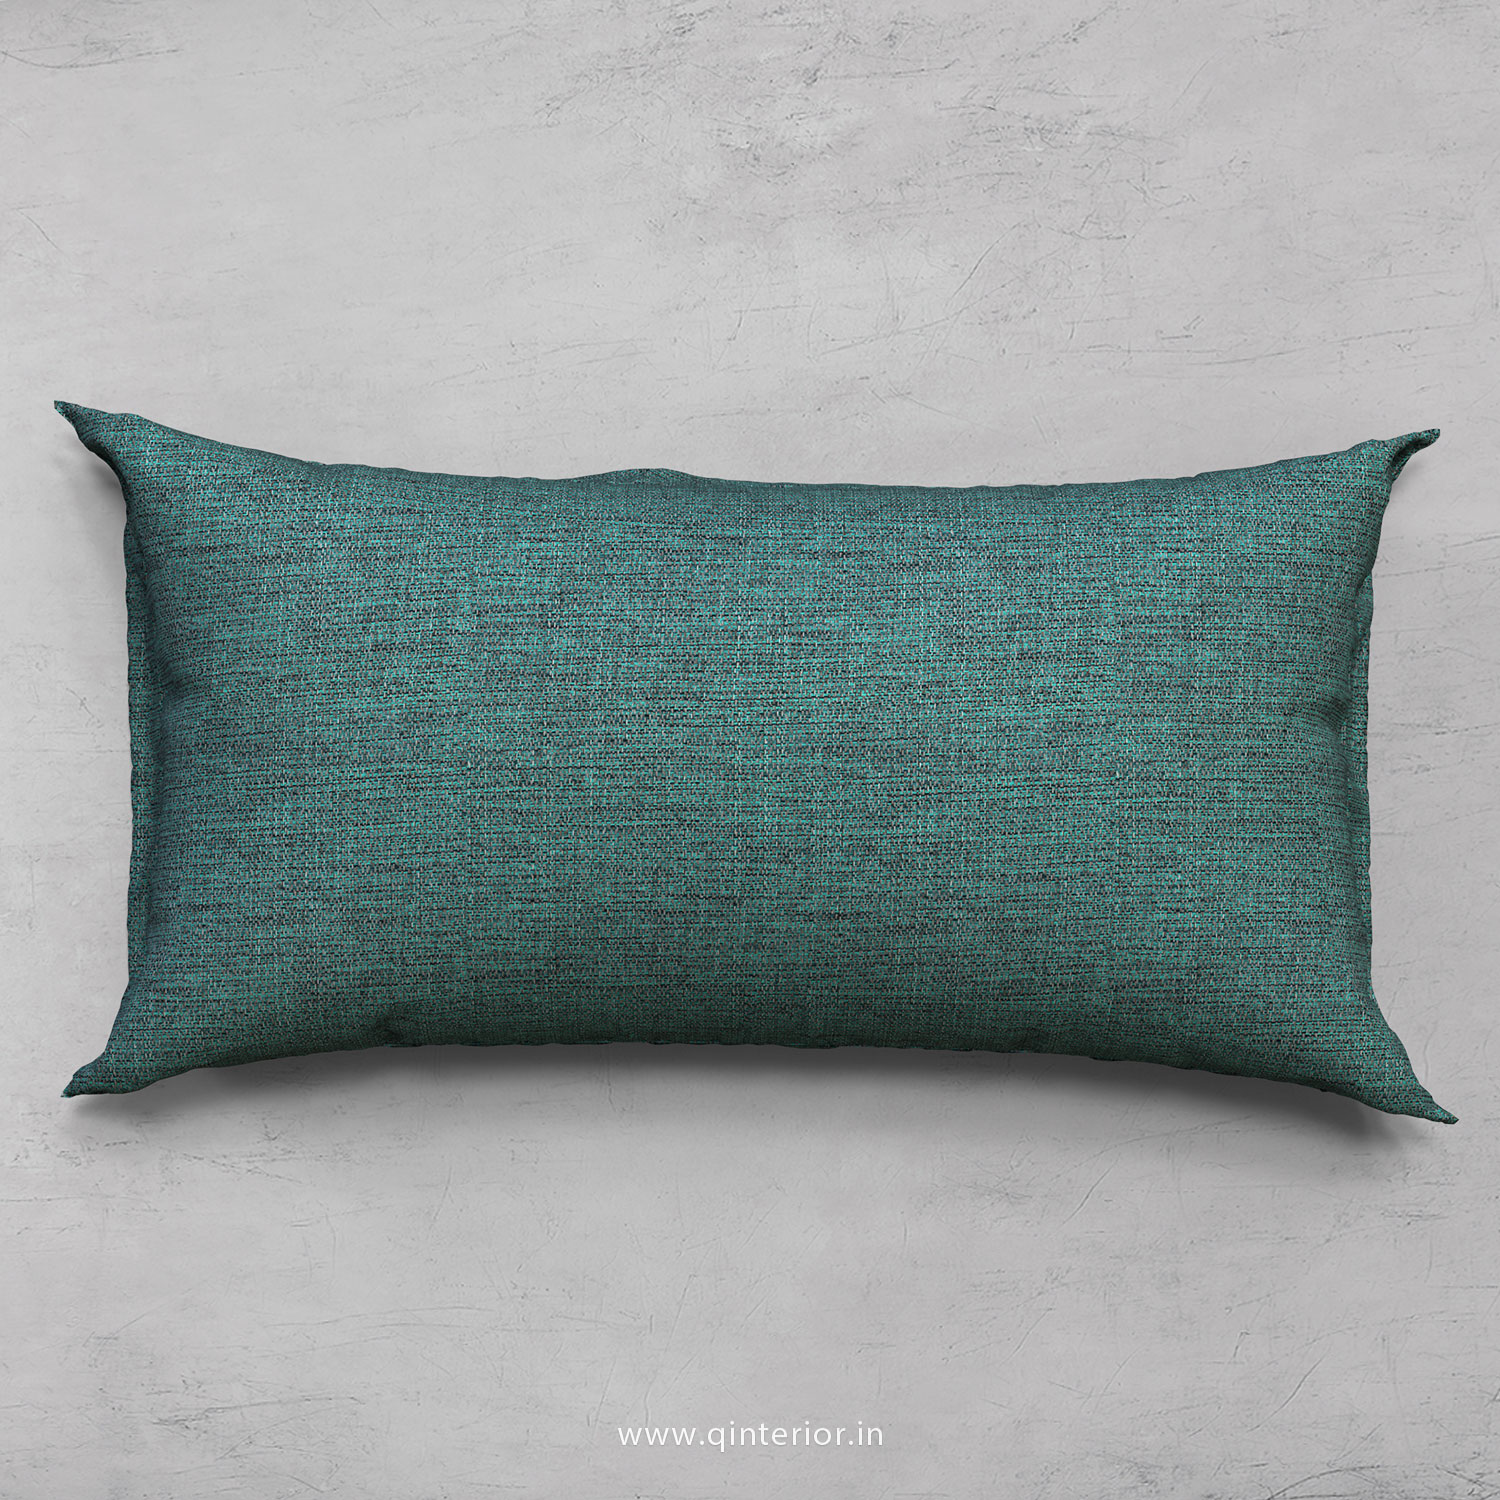 Cushion With Cushion Cover in Jacquard - CUS002 JQ23